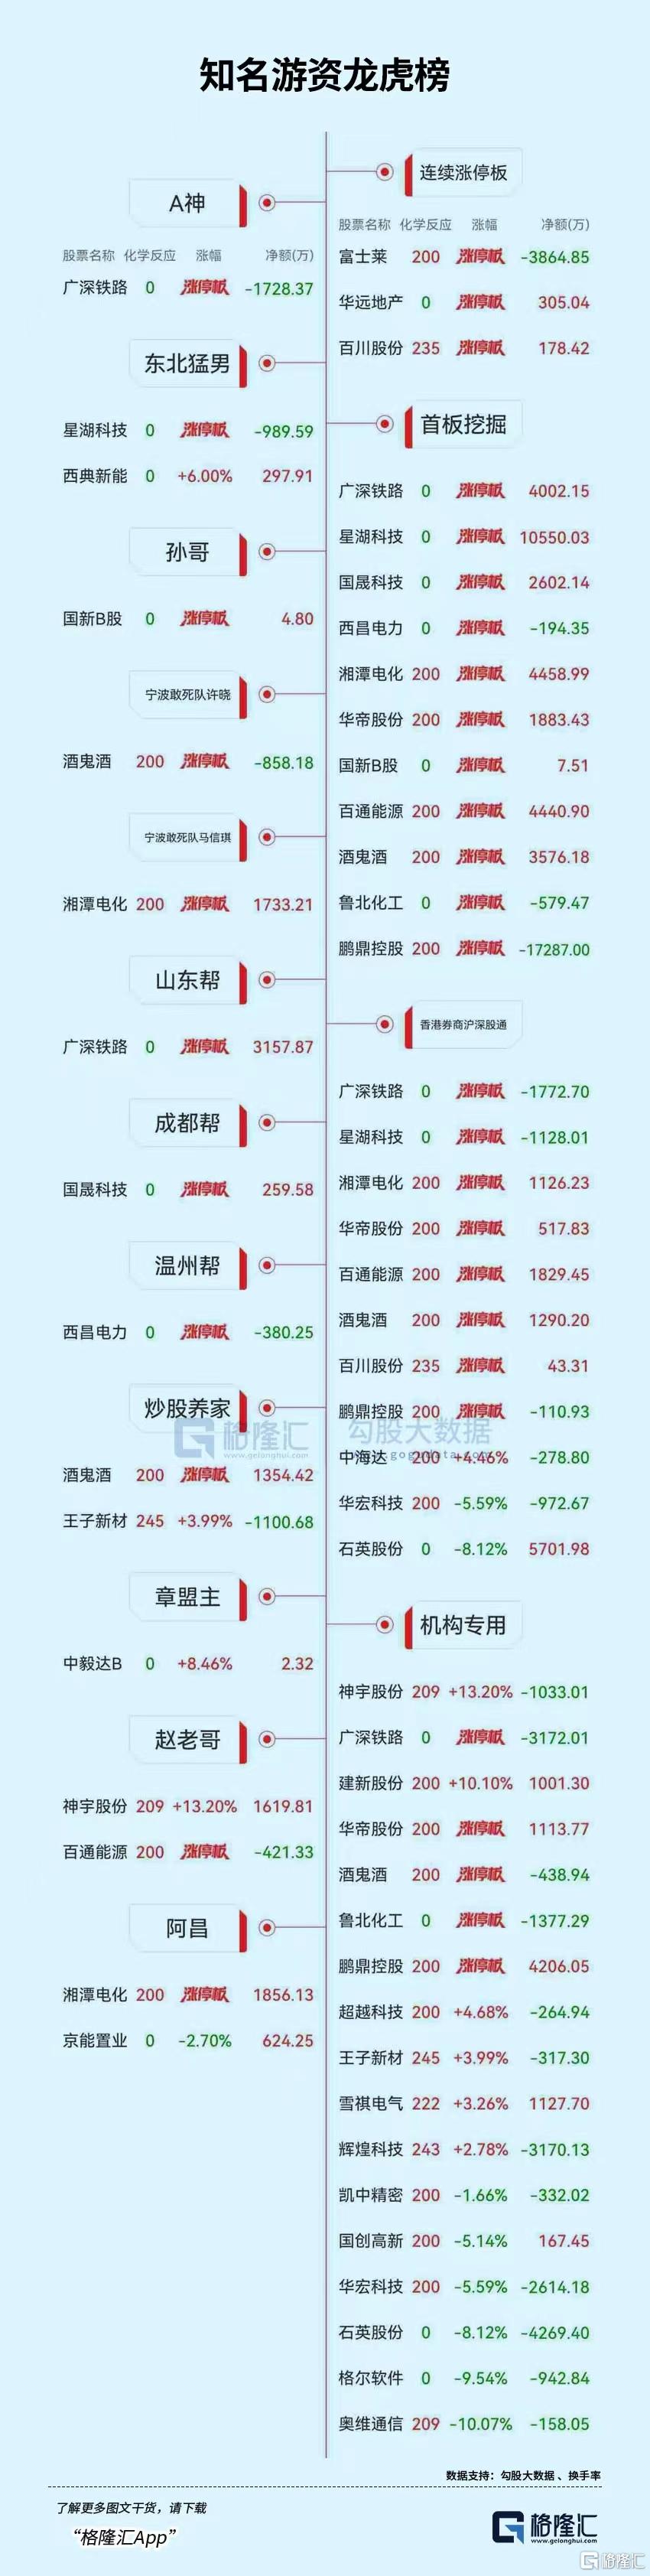 龙虎榜 | 1.73亿元资金出逃鹏鼎控股，方新侠、山东帮联手打板广深铁路